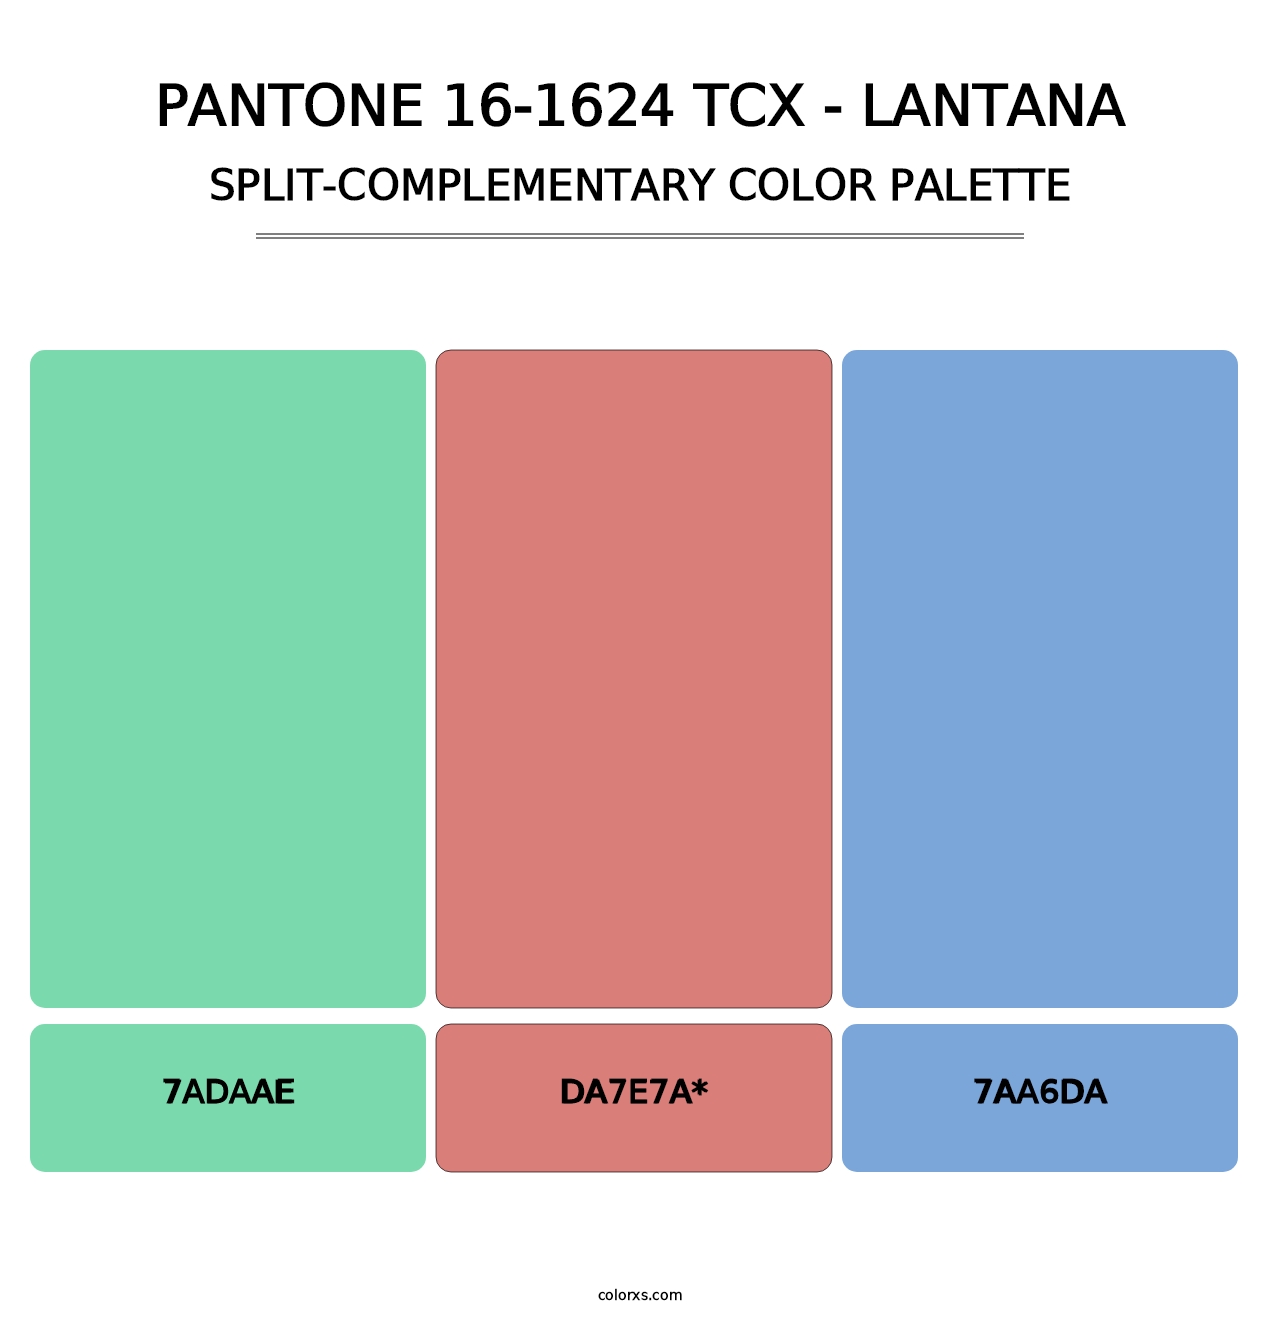 PANTONE 16-1624 TCX - Lantana - Split-Complementary Color Palette